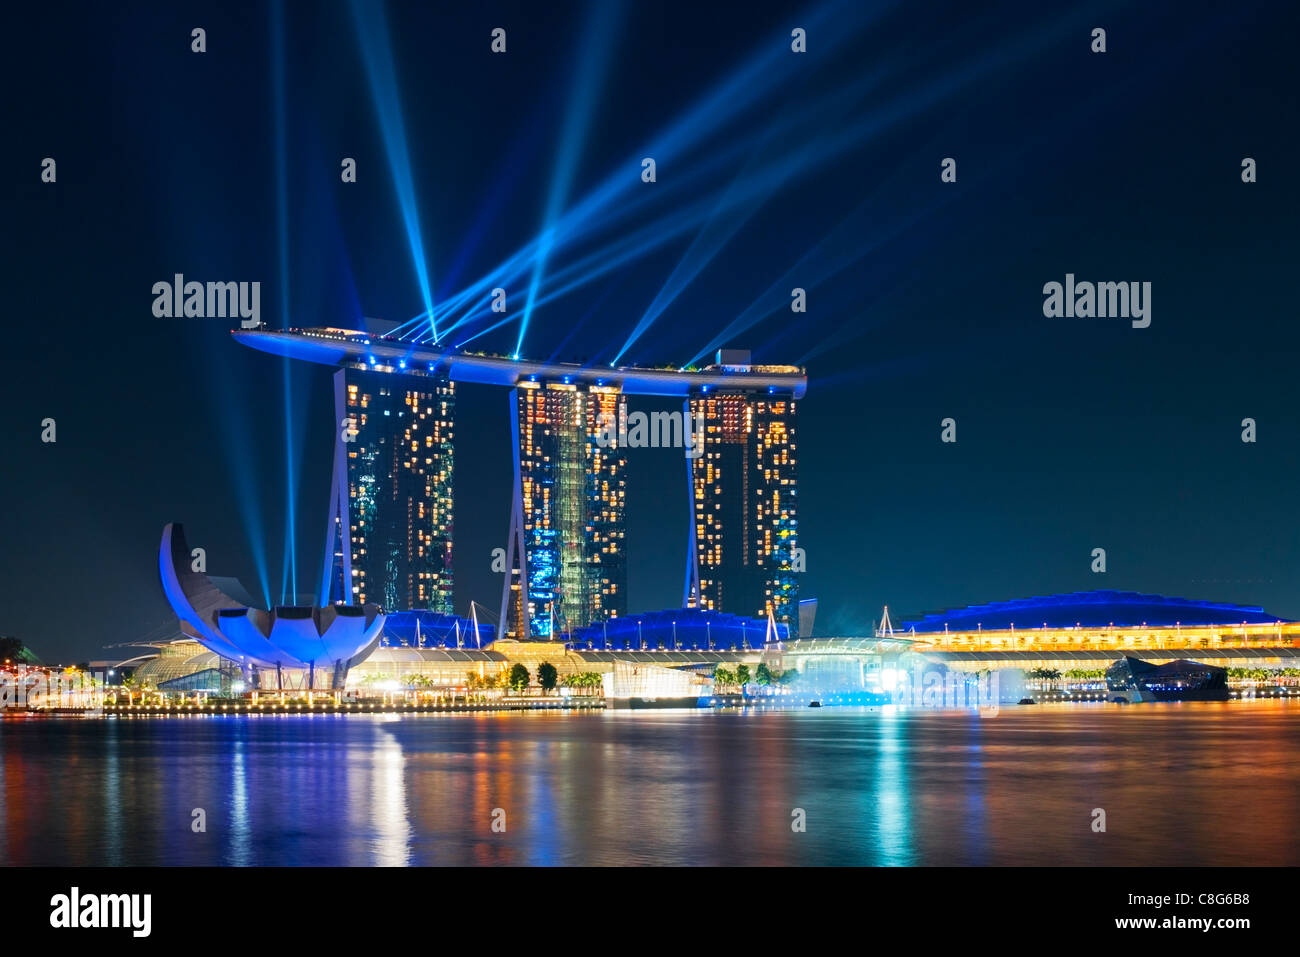 La lumière nocturne et de l'eau, spectacle étonnant 'Plein', avec des lasers à la Marina Bay Sands Hotel, Singapore Banque D'Images